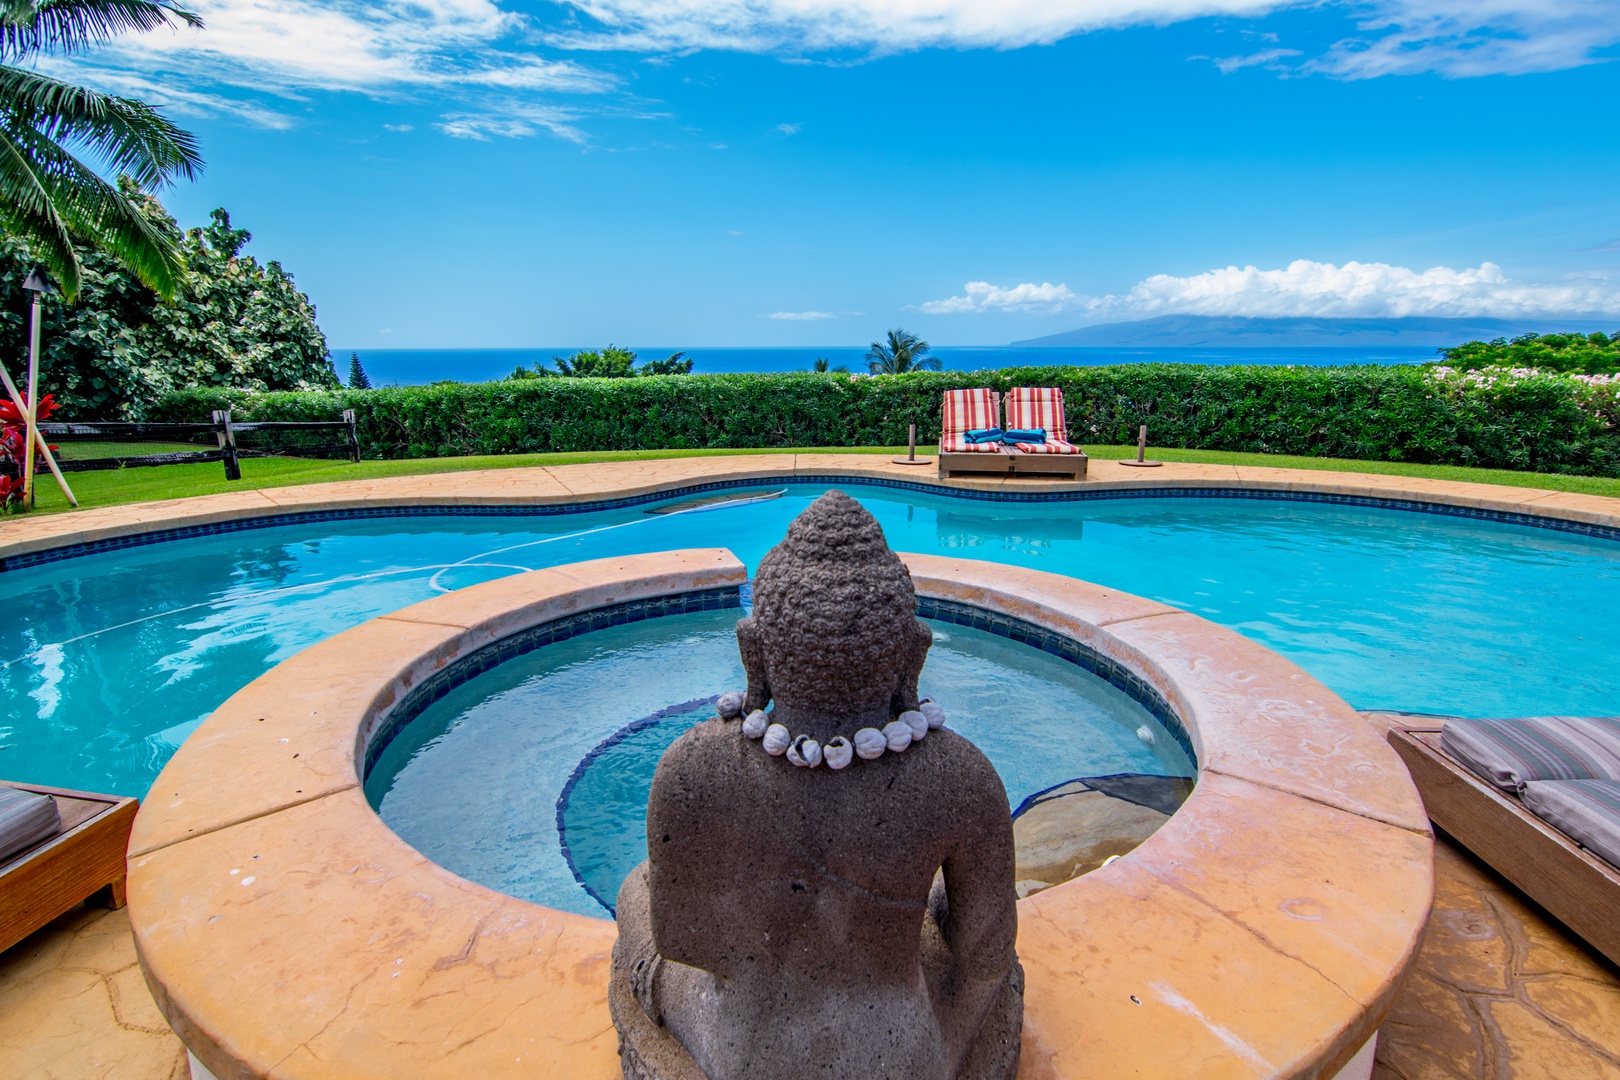 Lahaina Vacation Rentals, Makena Aloha Estate* - Breathtaking View of the Ocean and Moloka'i